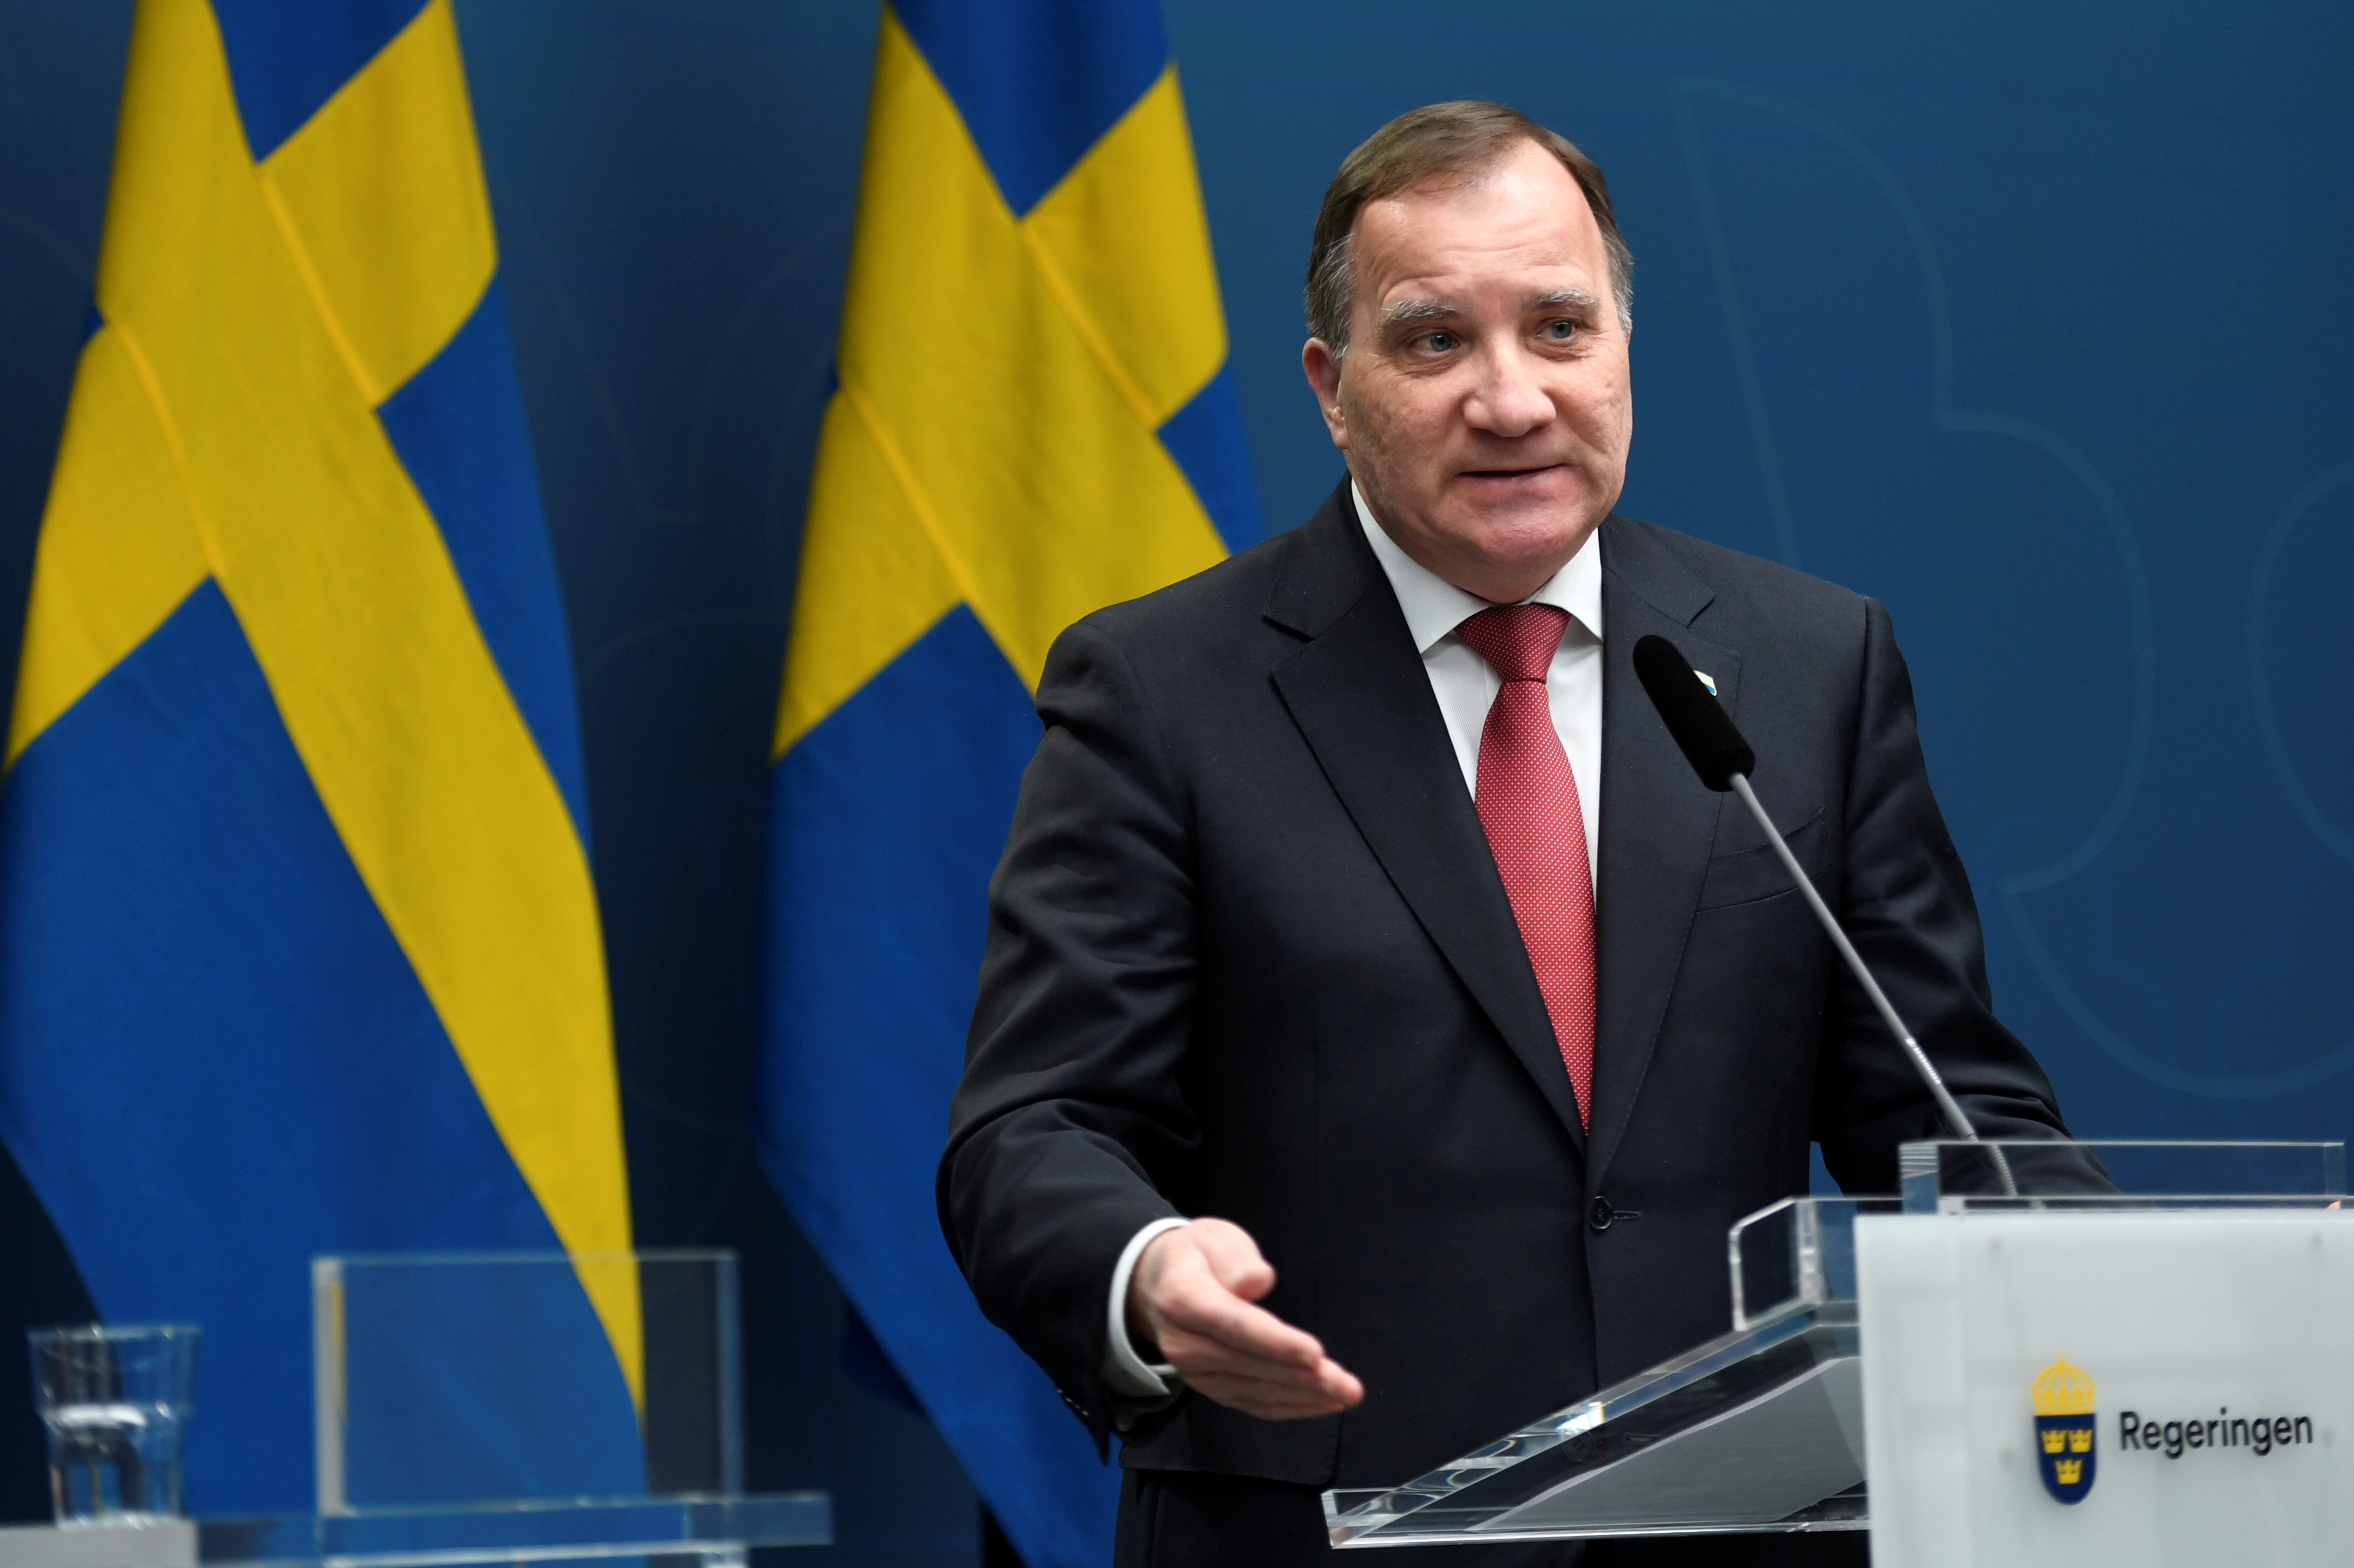 El primer ministro sueco aseguró que eligieron “estrategia correcta” contra  el COVID-19 - Infobae